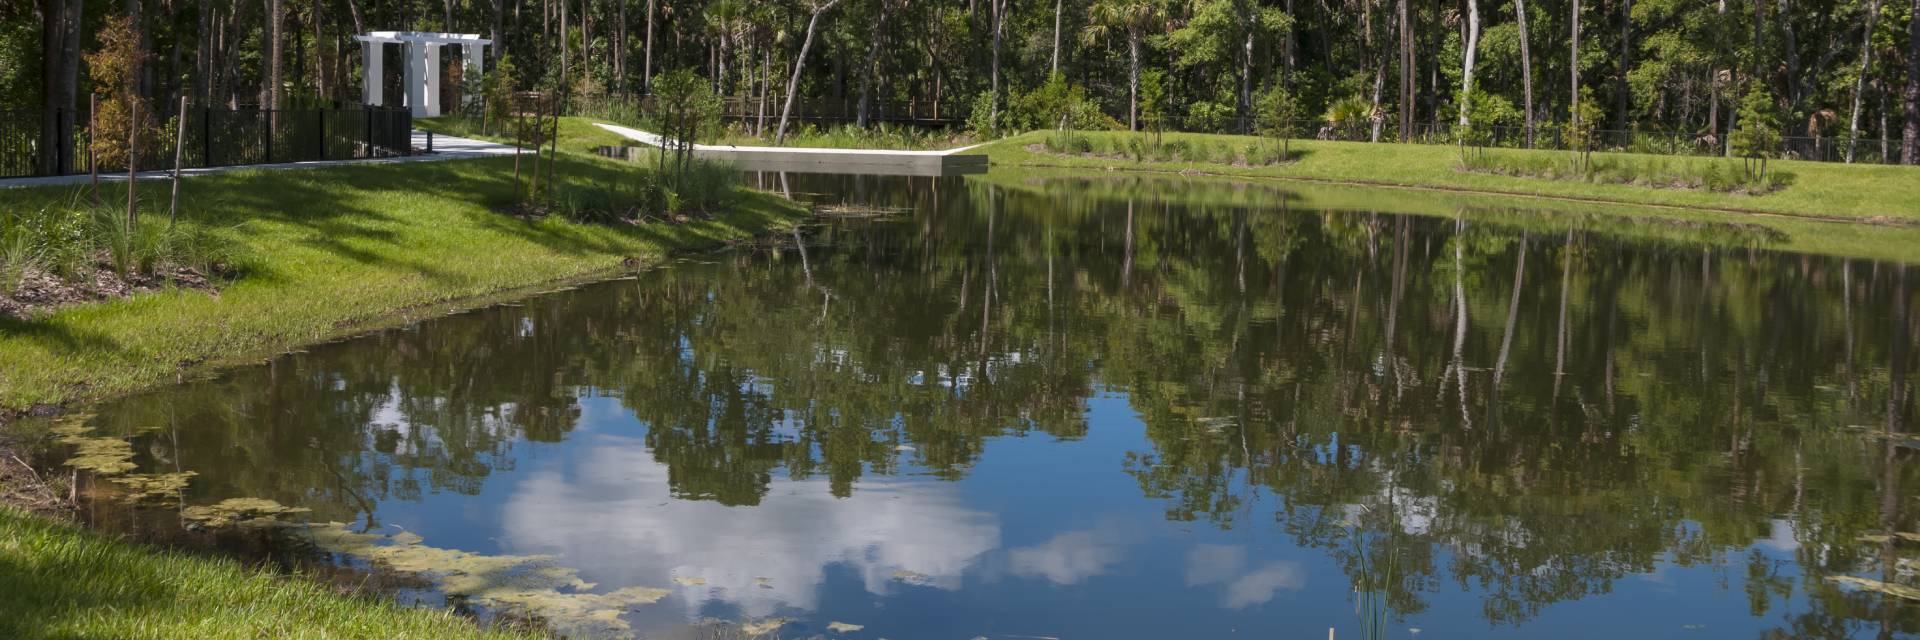 Woodburn Landscapes Retention Pond